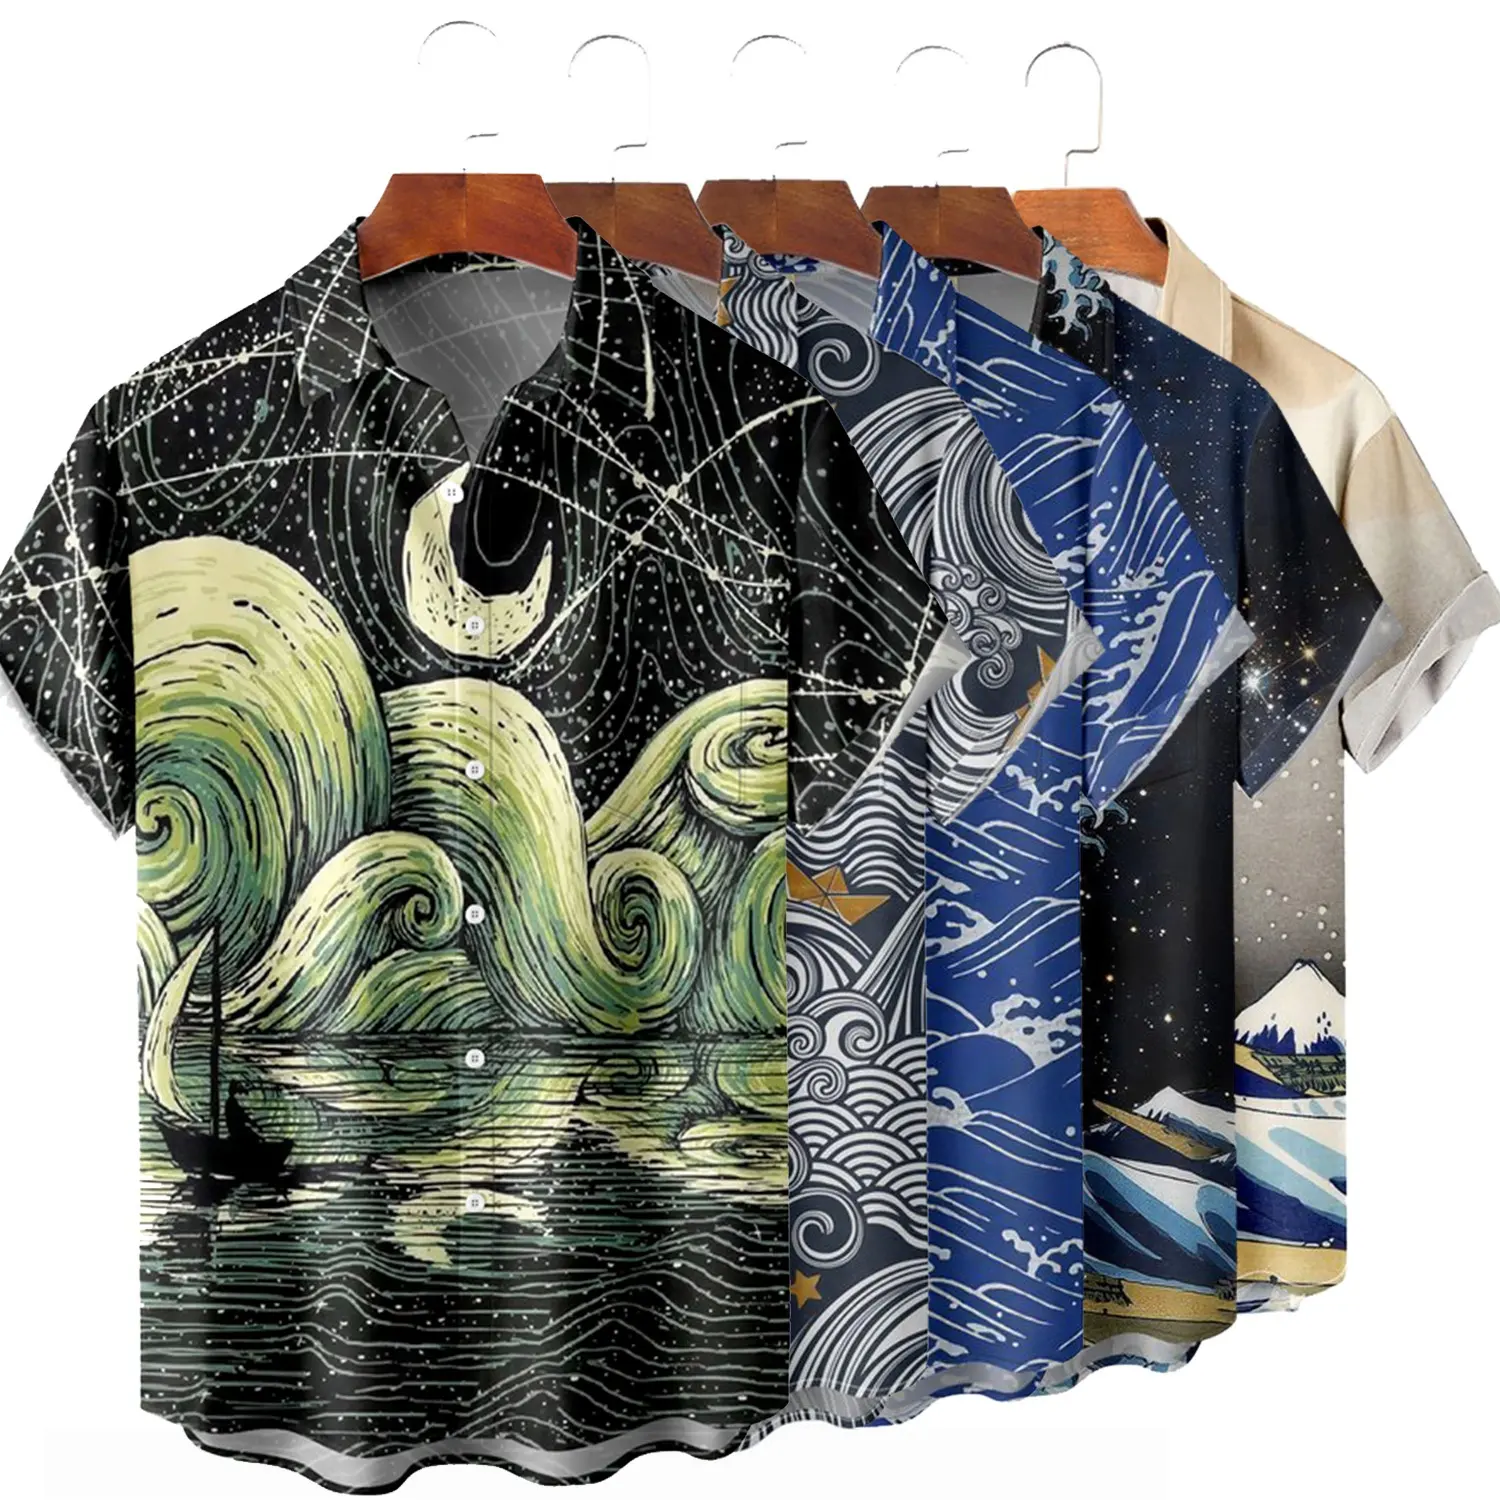 Personalizado Vintage 3D impresso dos homens camisas havaianas geral solta moda verão t-shirt dos homens de secagem rápida Unisex onda traje